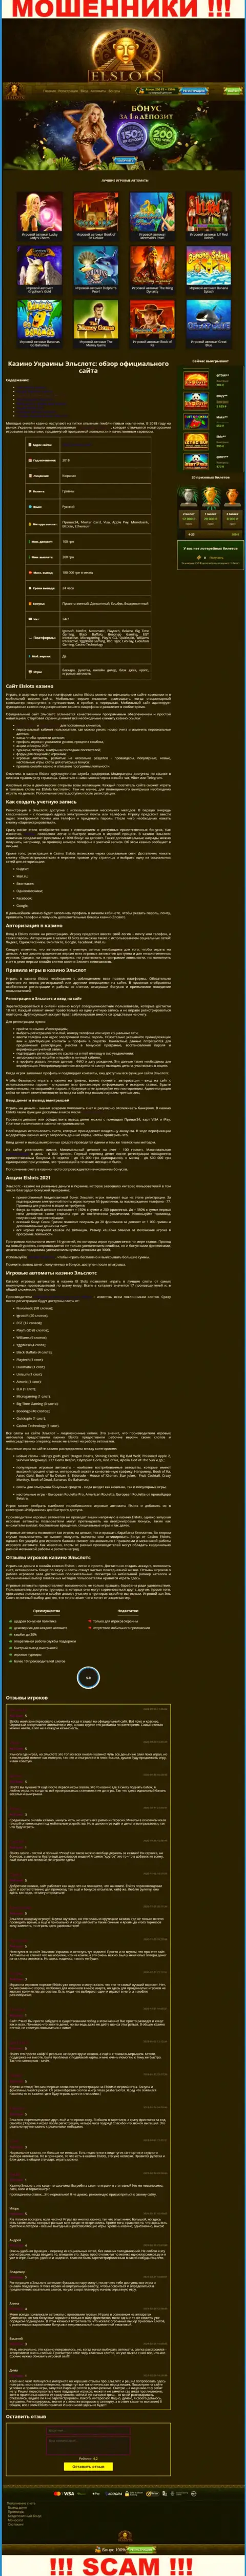 Вид официальной internet странички мошеннической организации ЕлСлотс